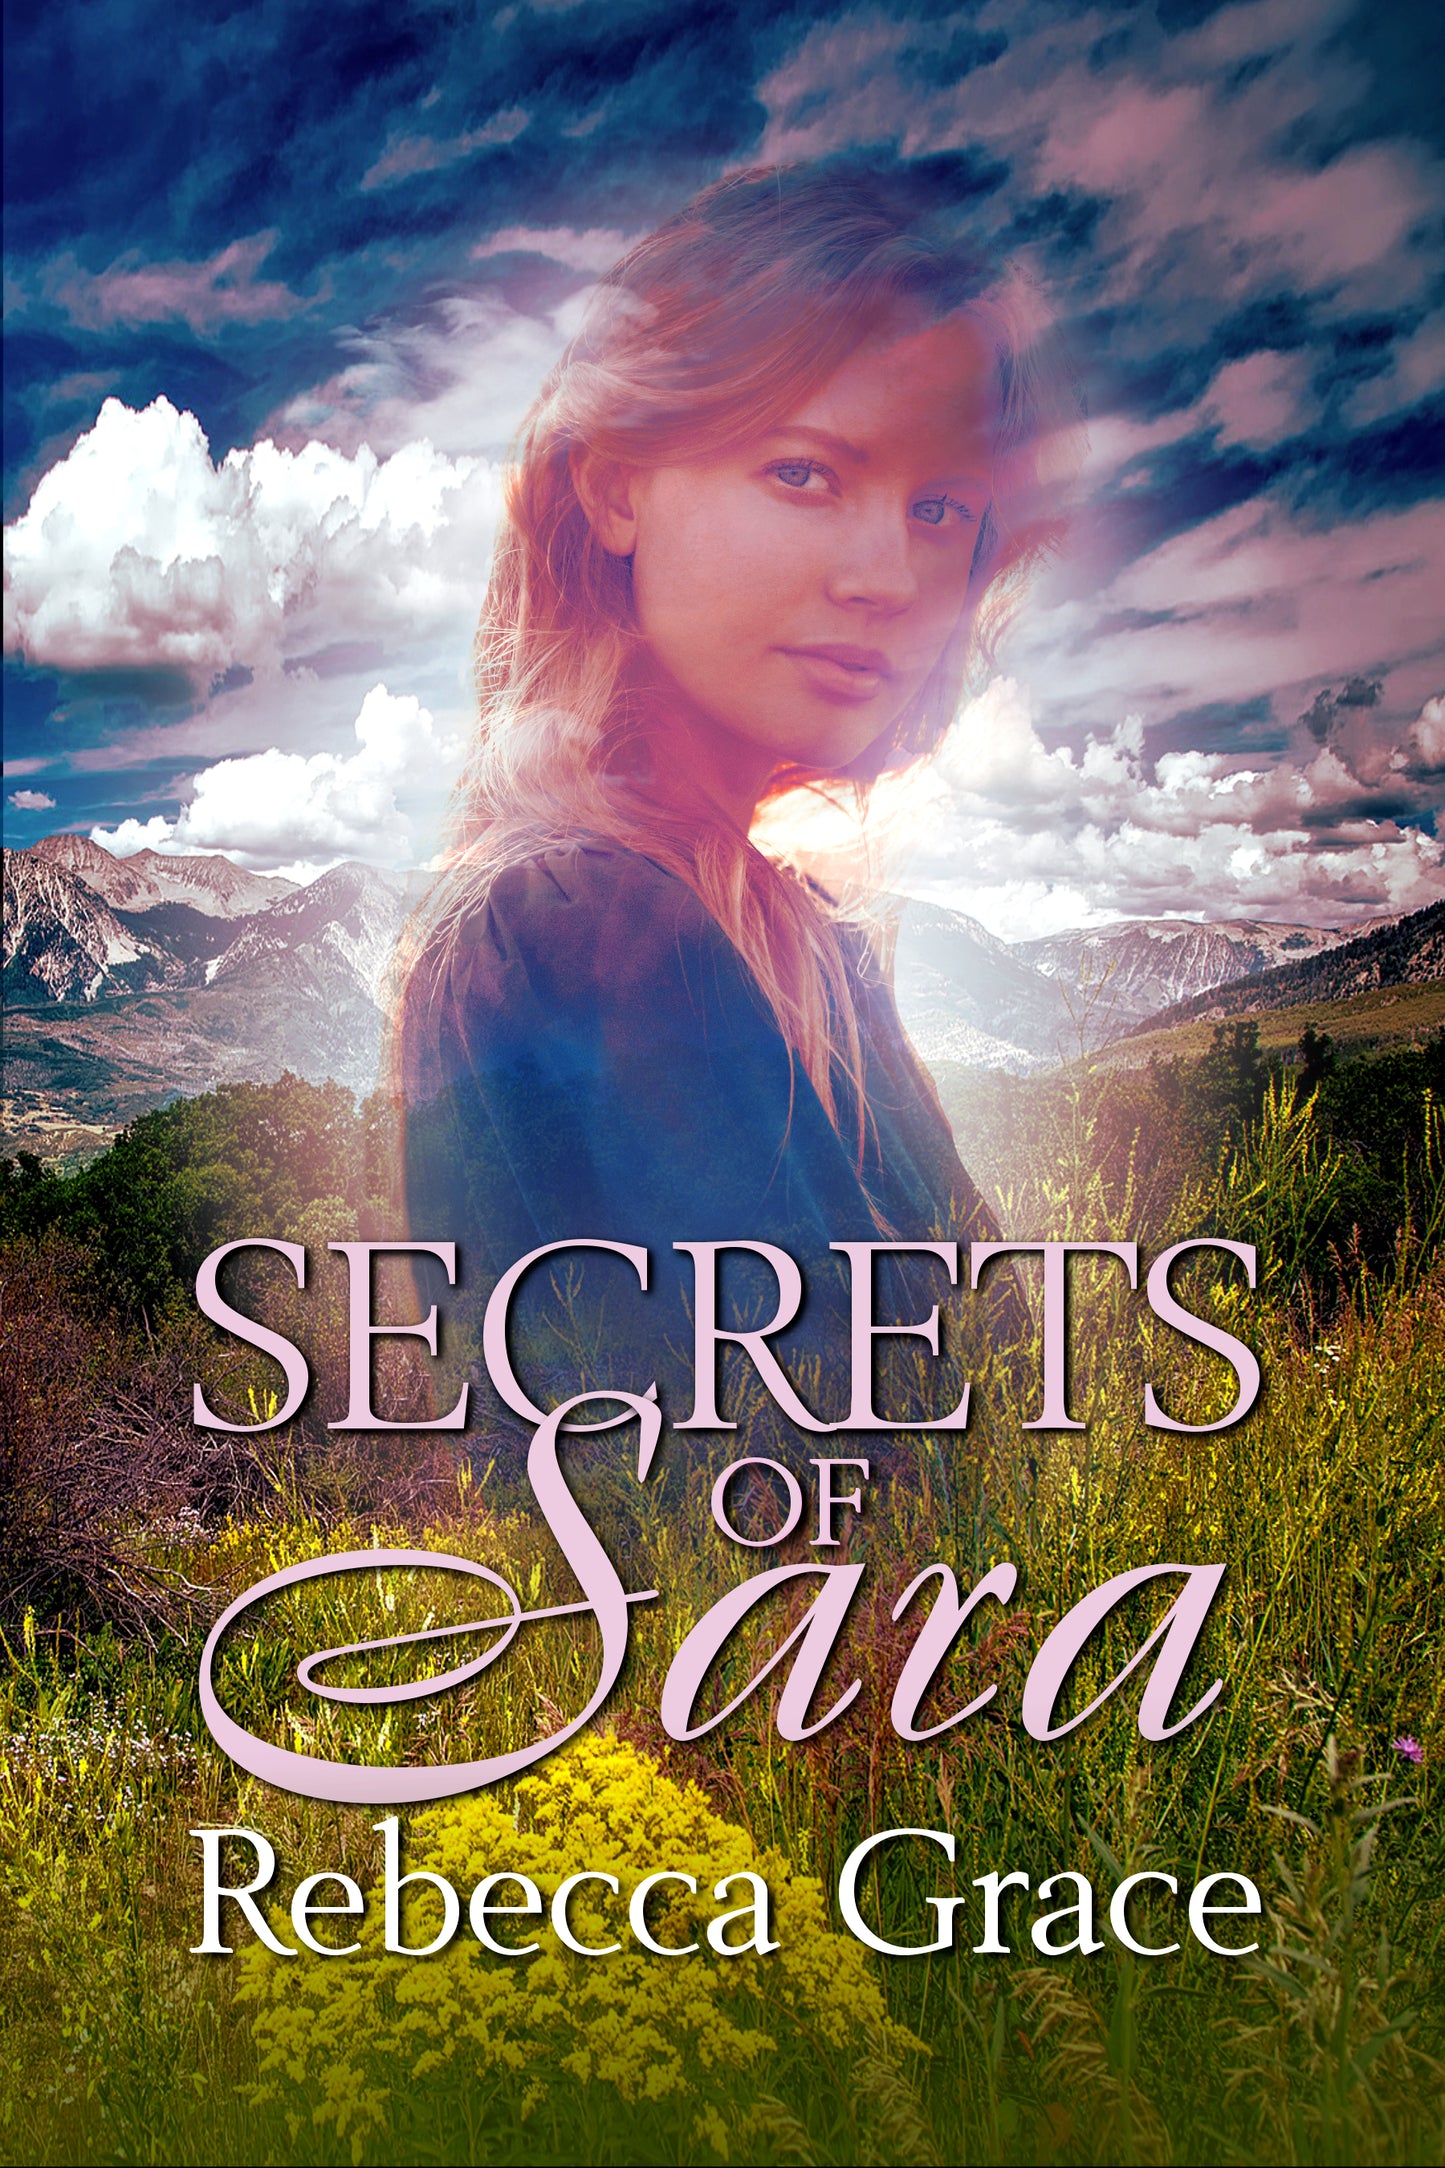 Secrets of Sara